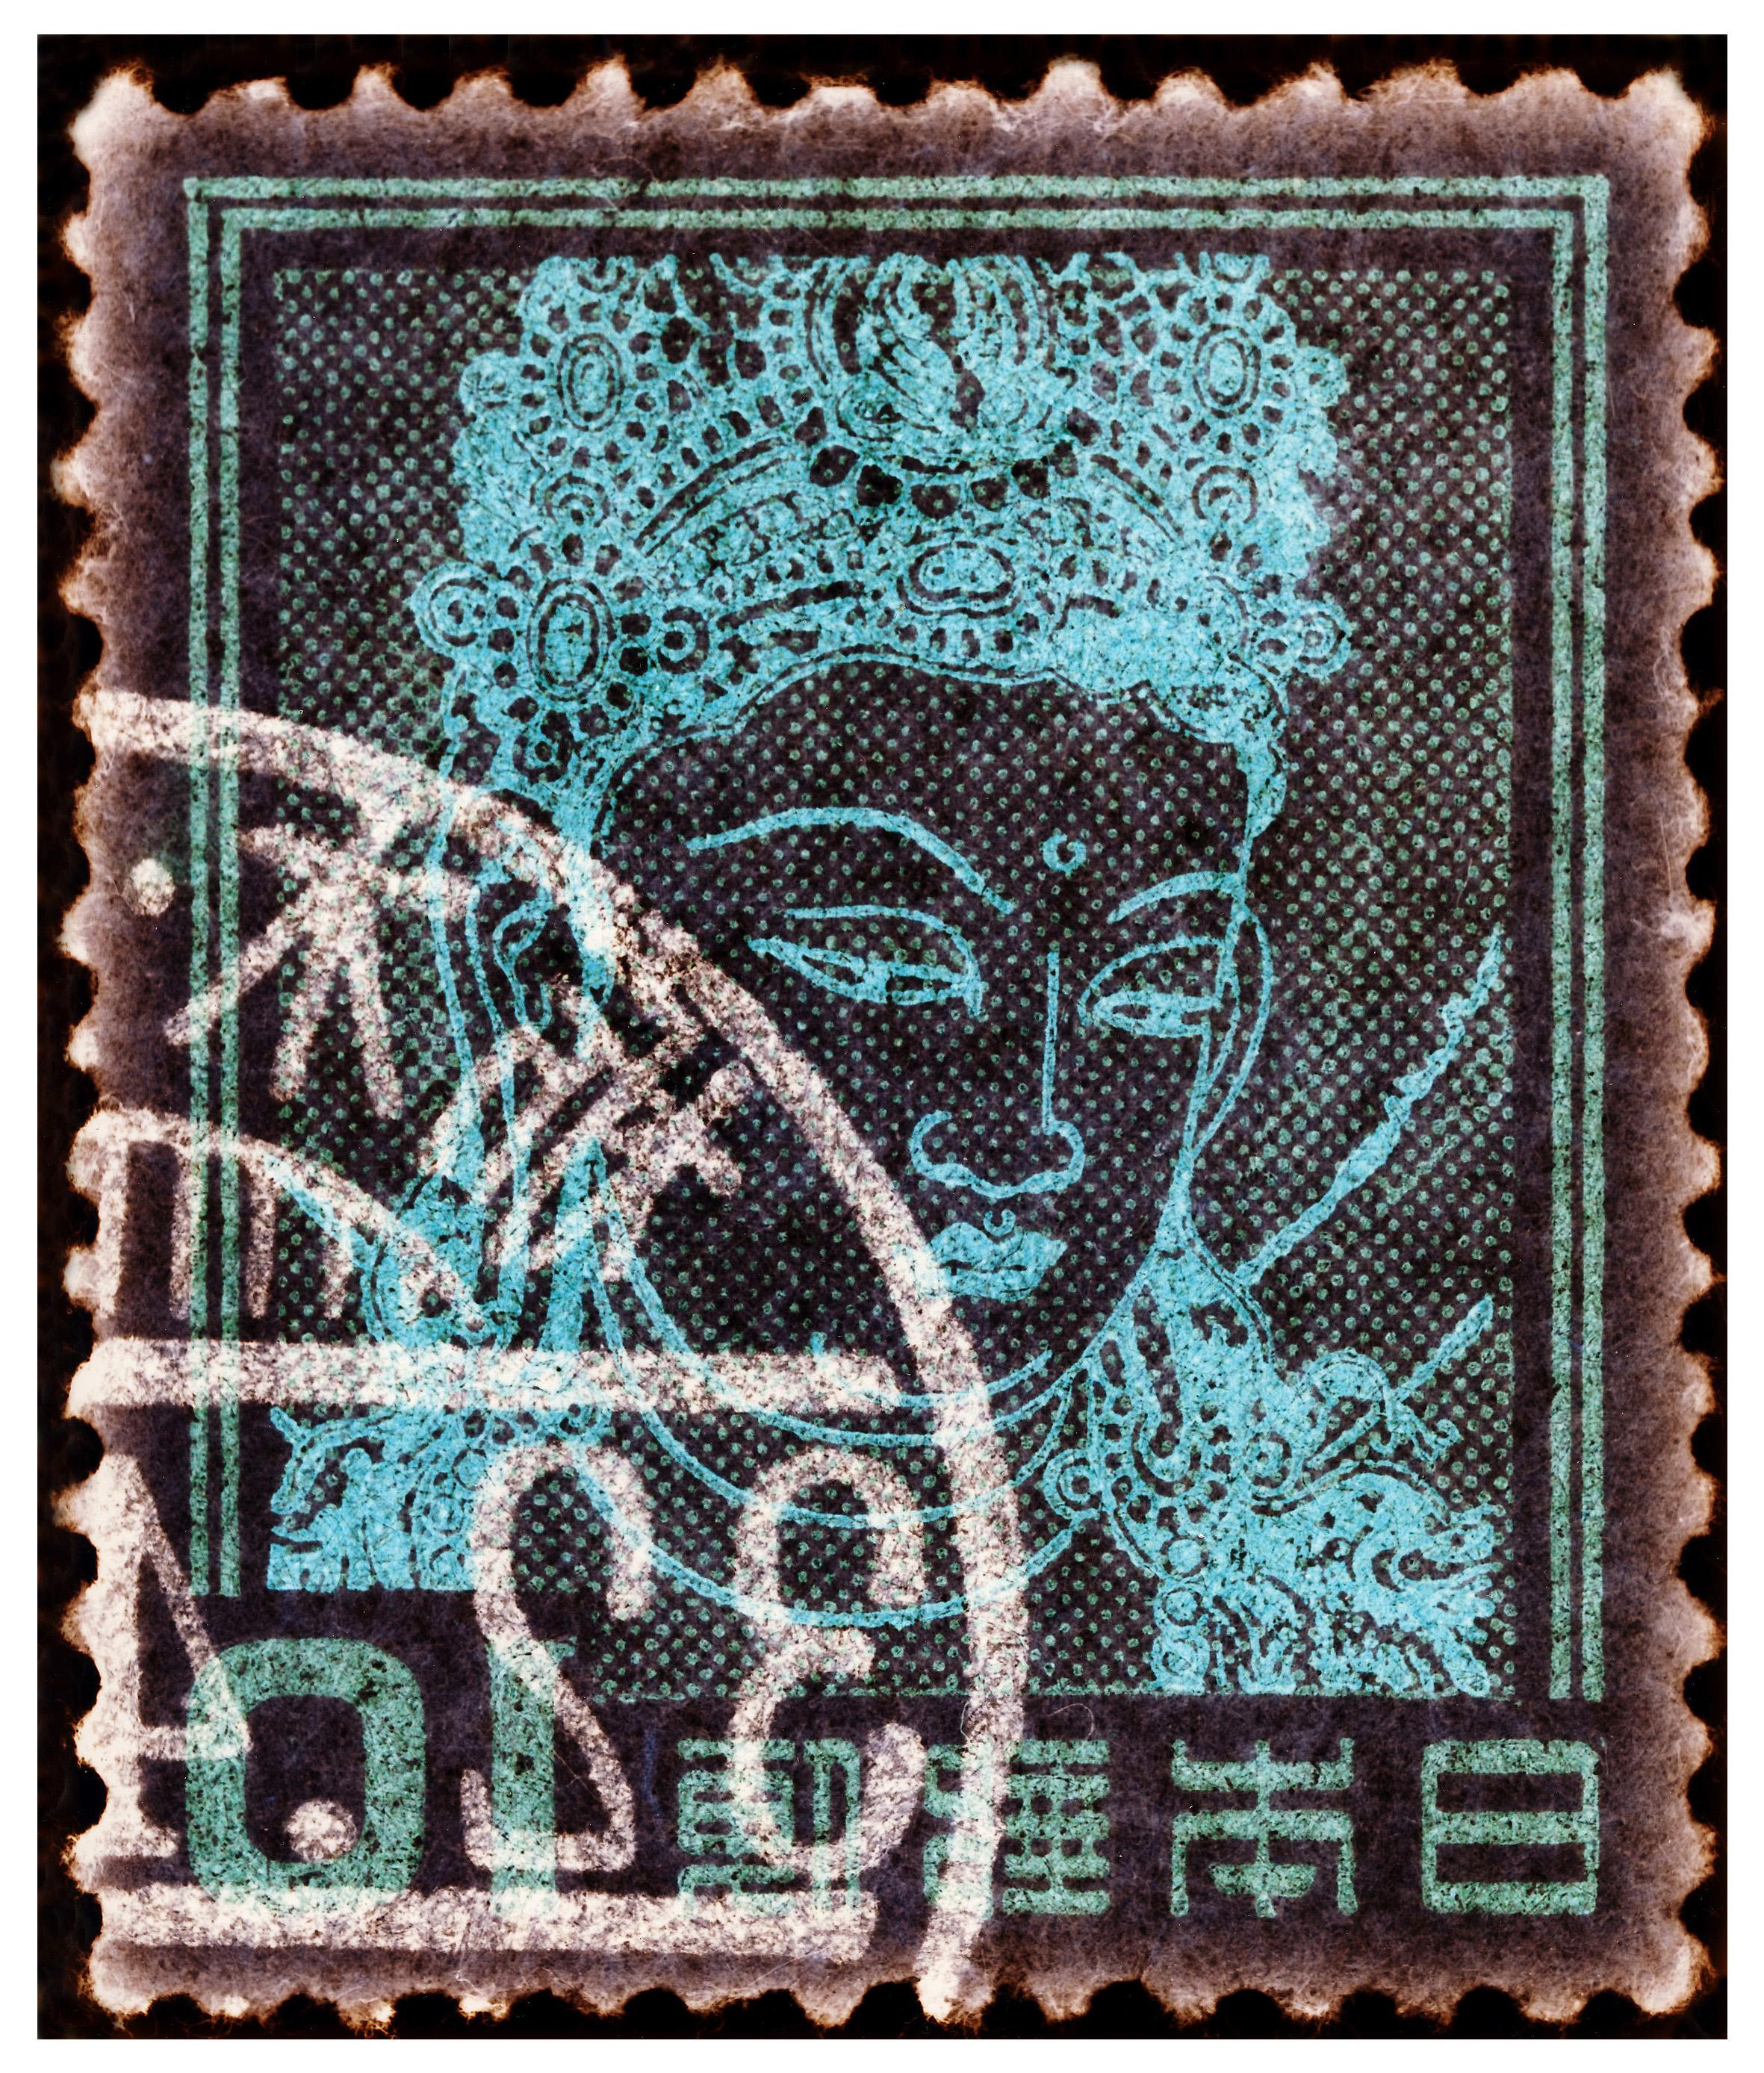 Collezione di francobolli, Dea Kannon (Dea buddista della Misericordia) - Arte asiatica